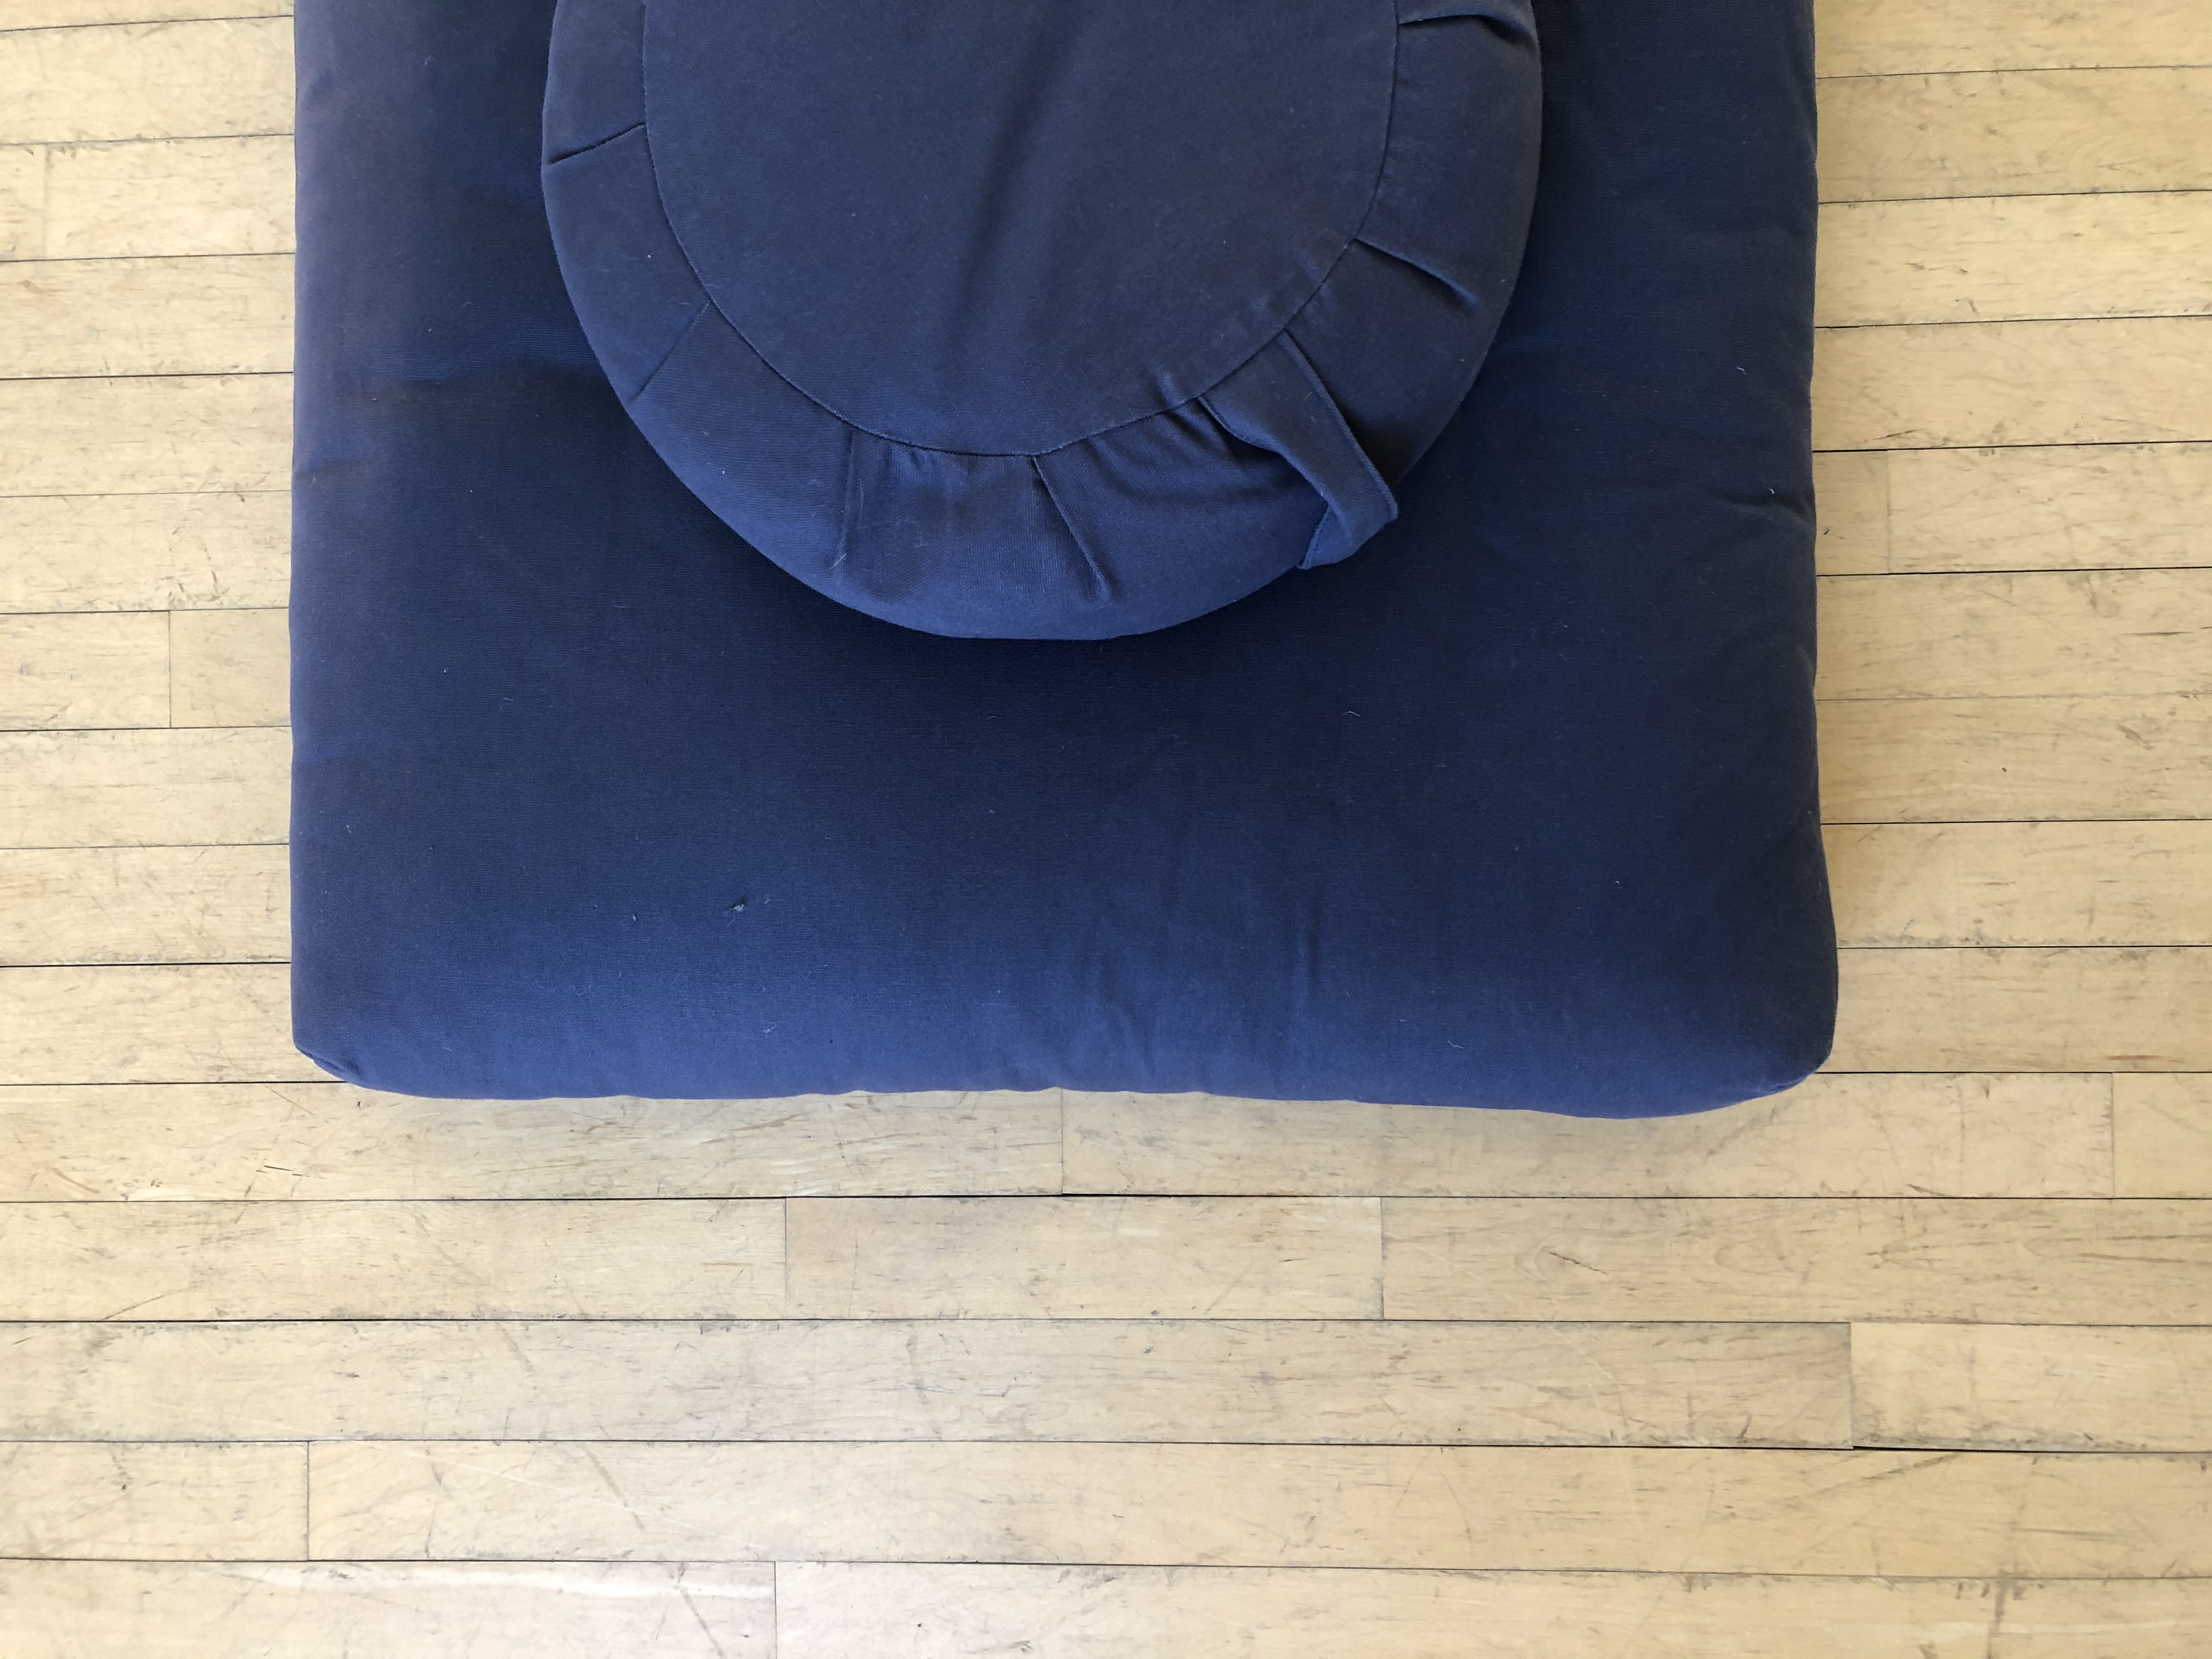 Meditation cushion